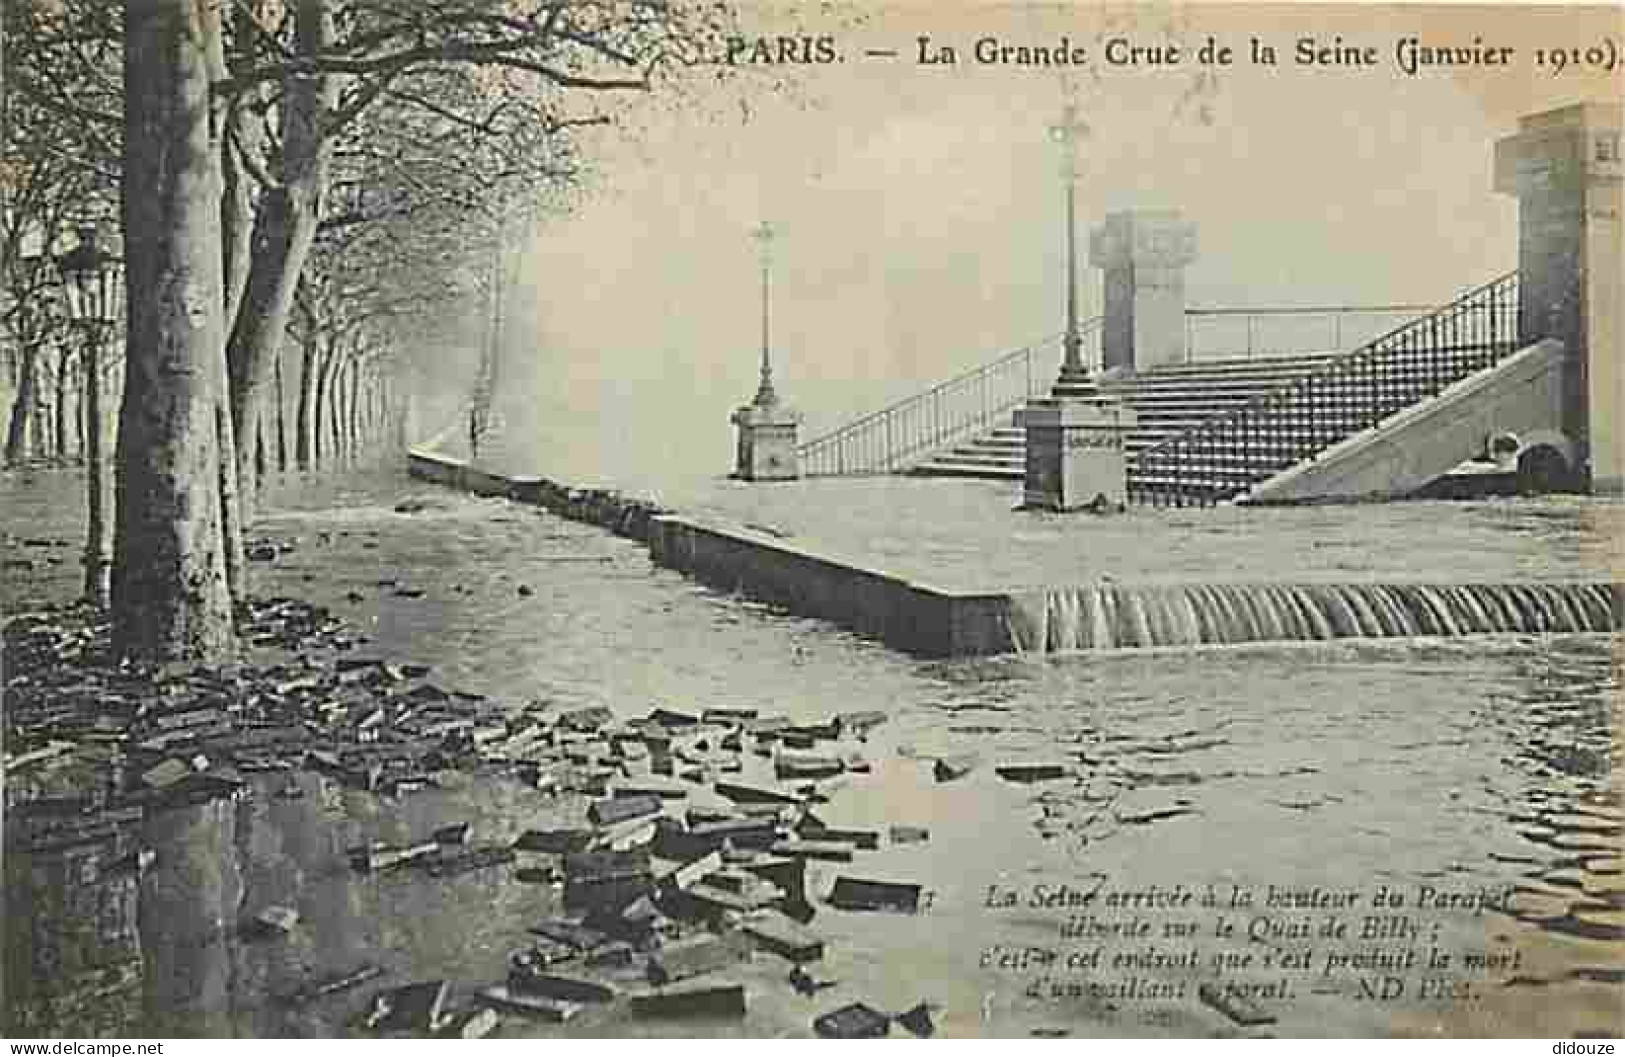 75 - Paris - La Grande Crue De La Seine De Janvier 1910 - La Seine Arrivée à La Hauteur Du Parapet Déborde Sur Le Quai D - Paris Flood, 1910